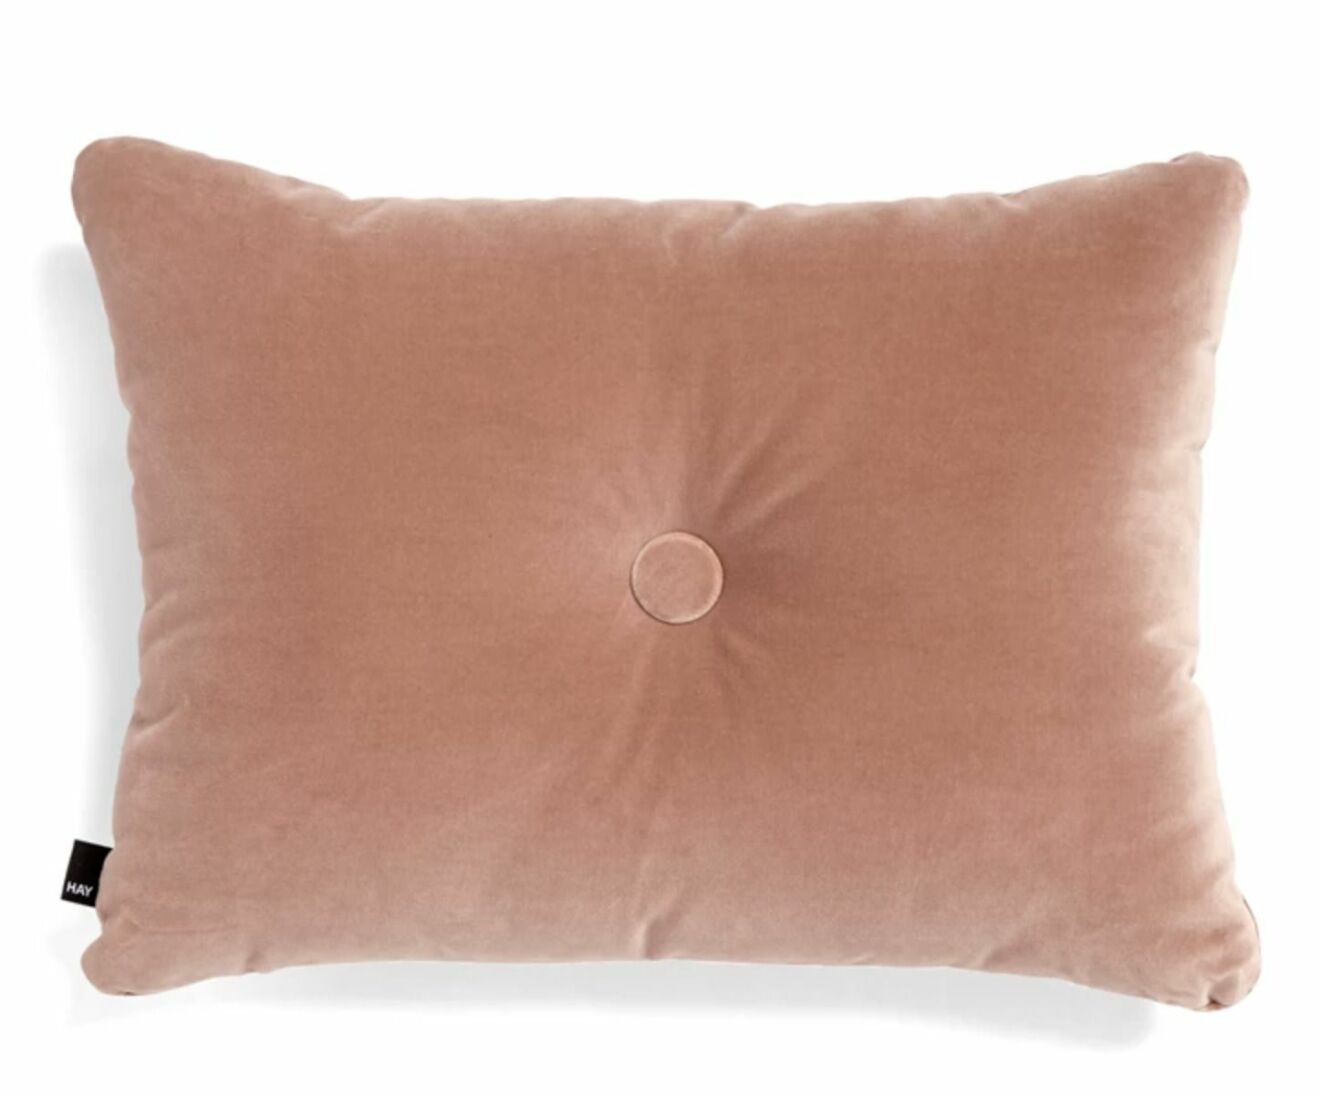 Dot cushion